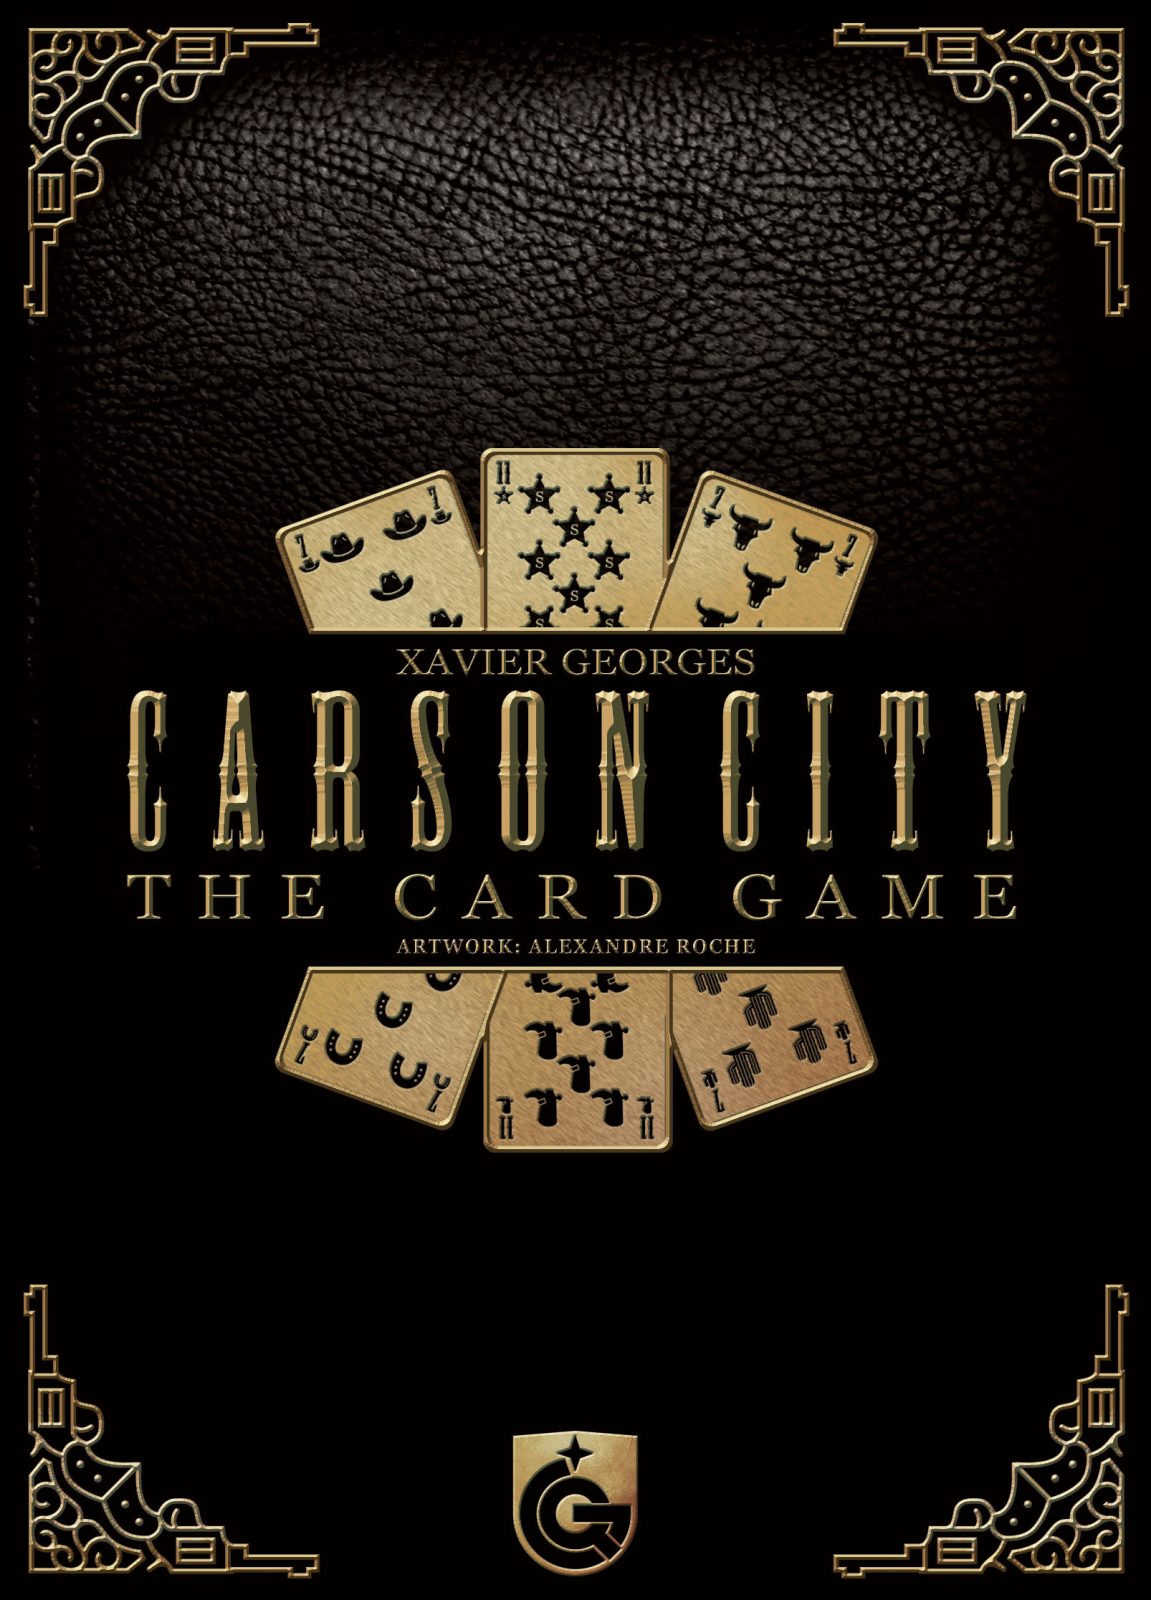 Carson City -The Card Game erscheint bis zum Juni 2018